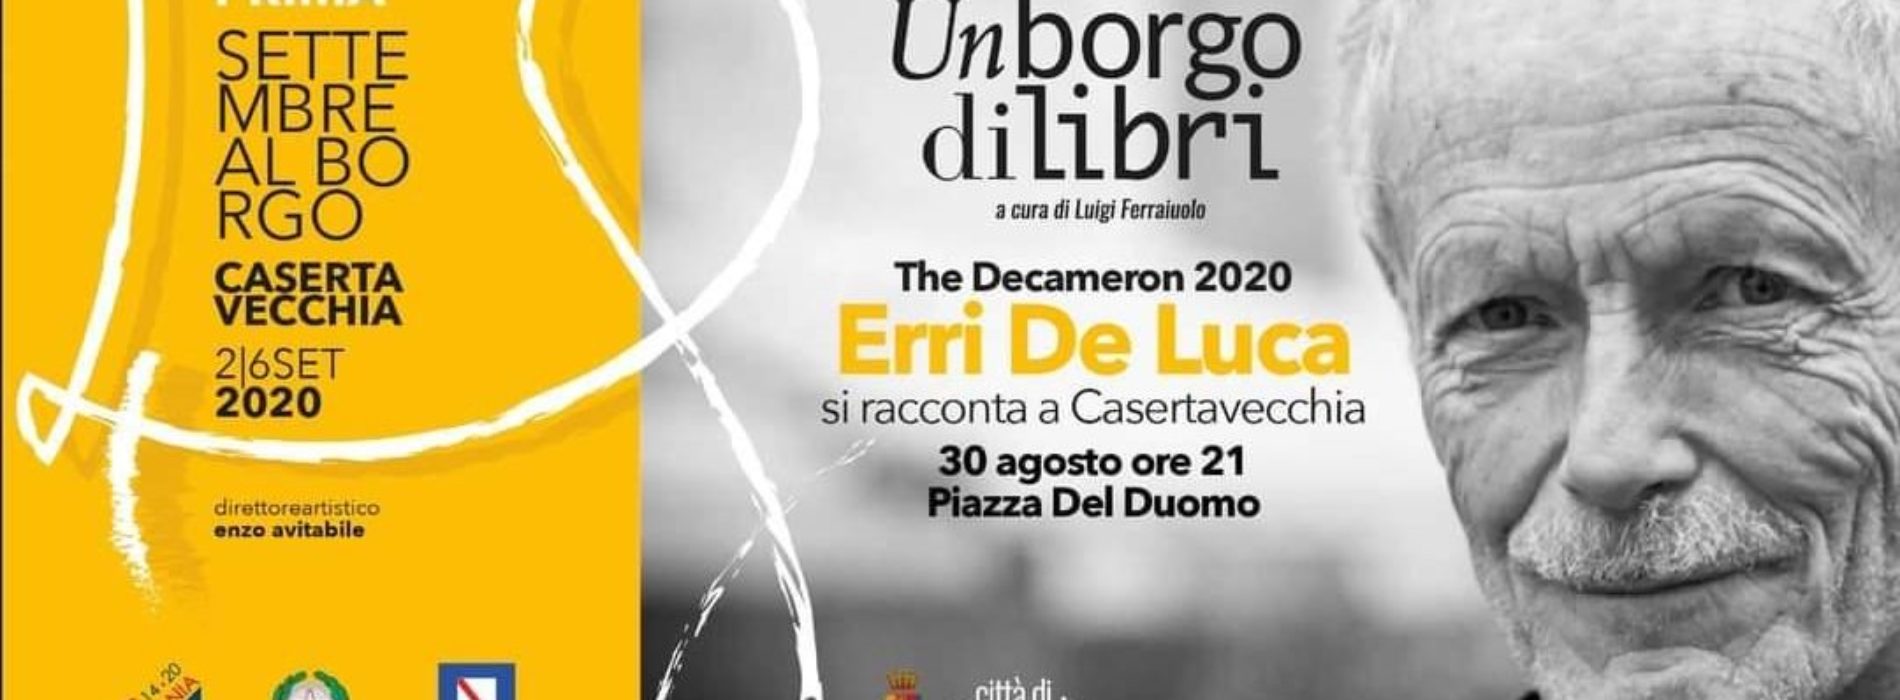 Settembre al Borgo 2020, l’anteprima è con Erri De Luca